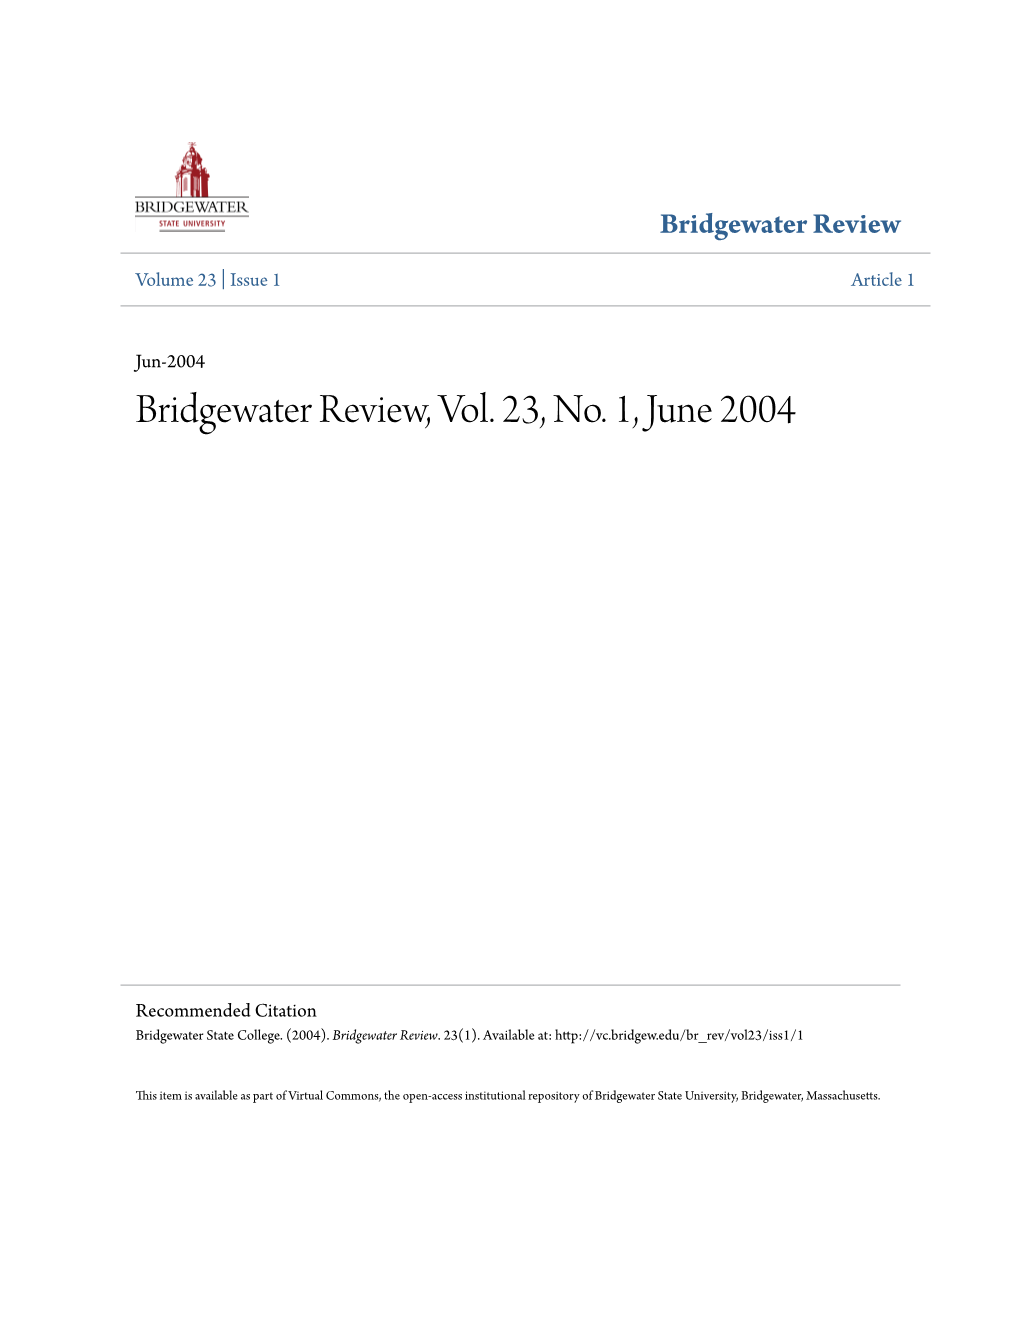 Bridgewater Review, Vol. 23, No. 1, June 2004